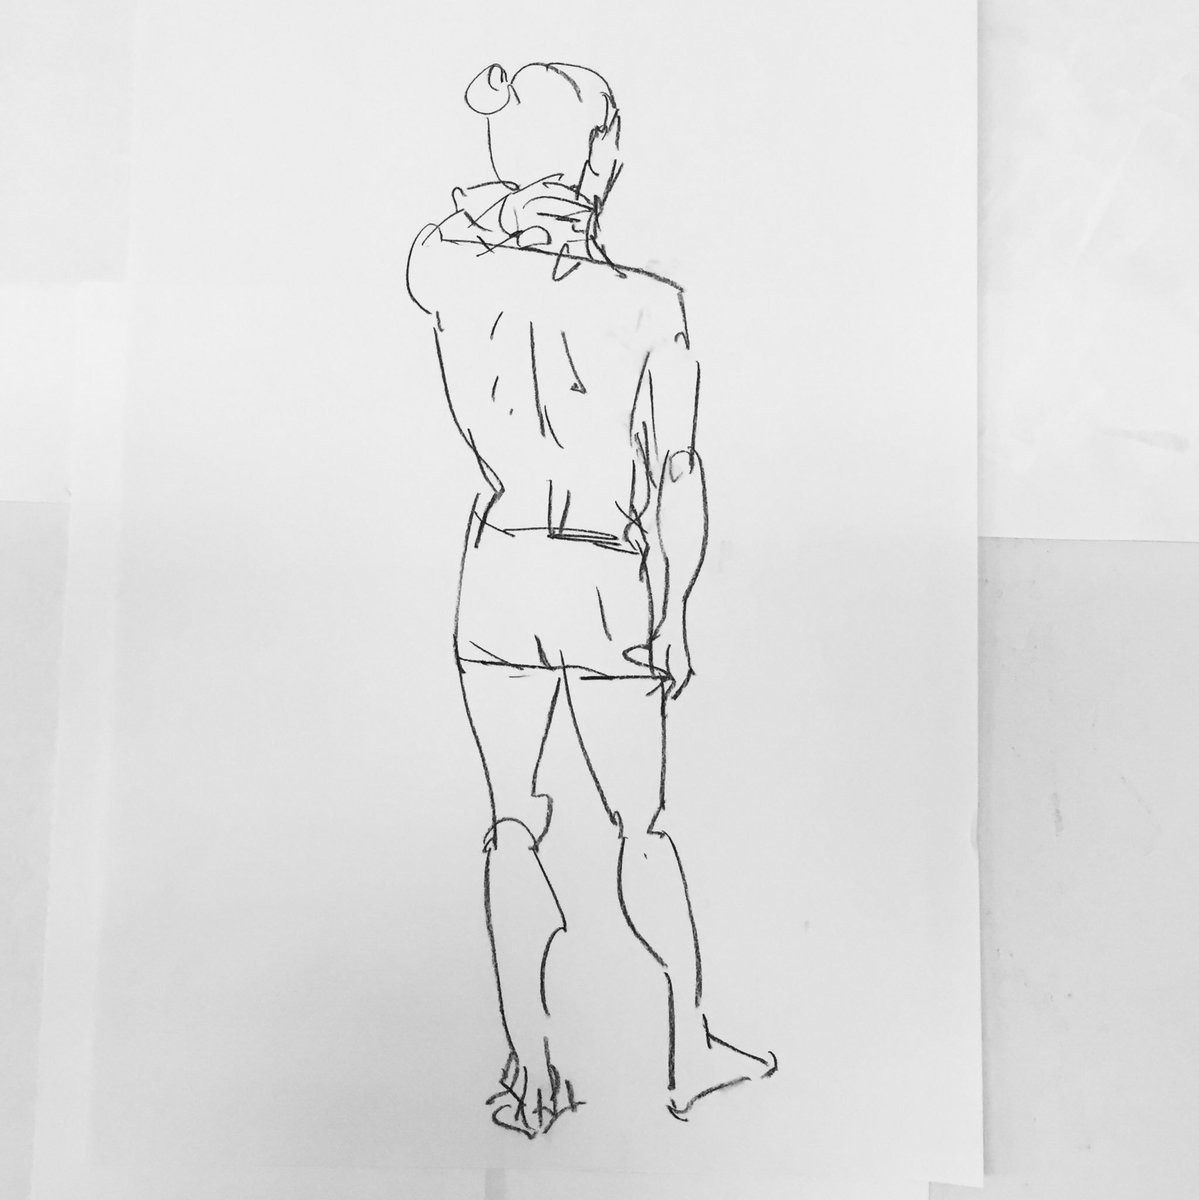 [ クロッキー ] Drawing 
セミヌード 男性モデル
2018/07/11 